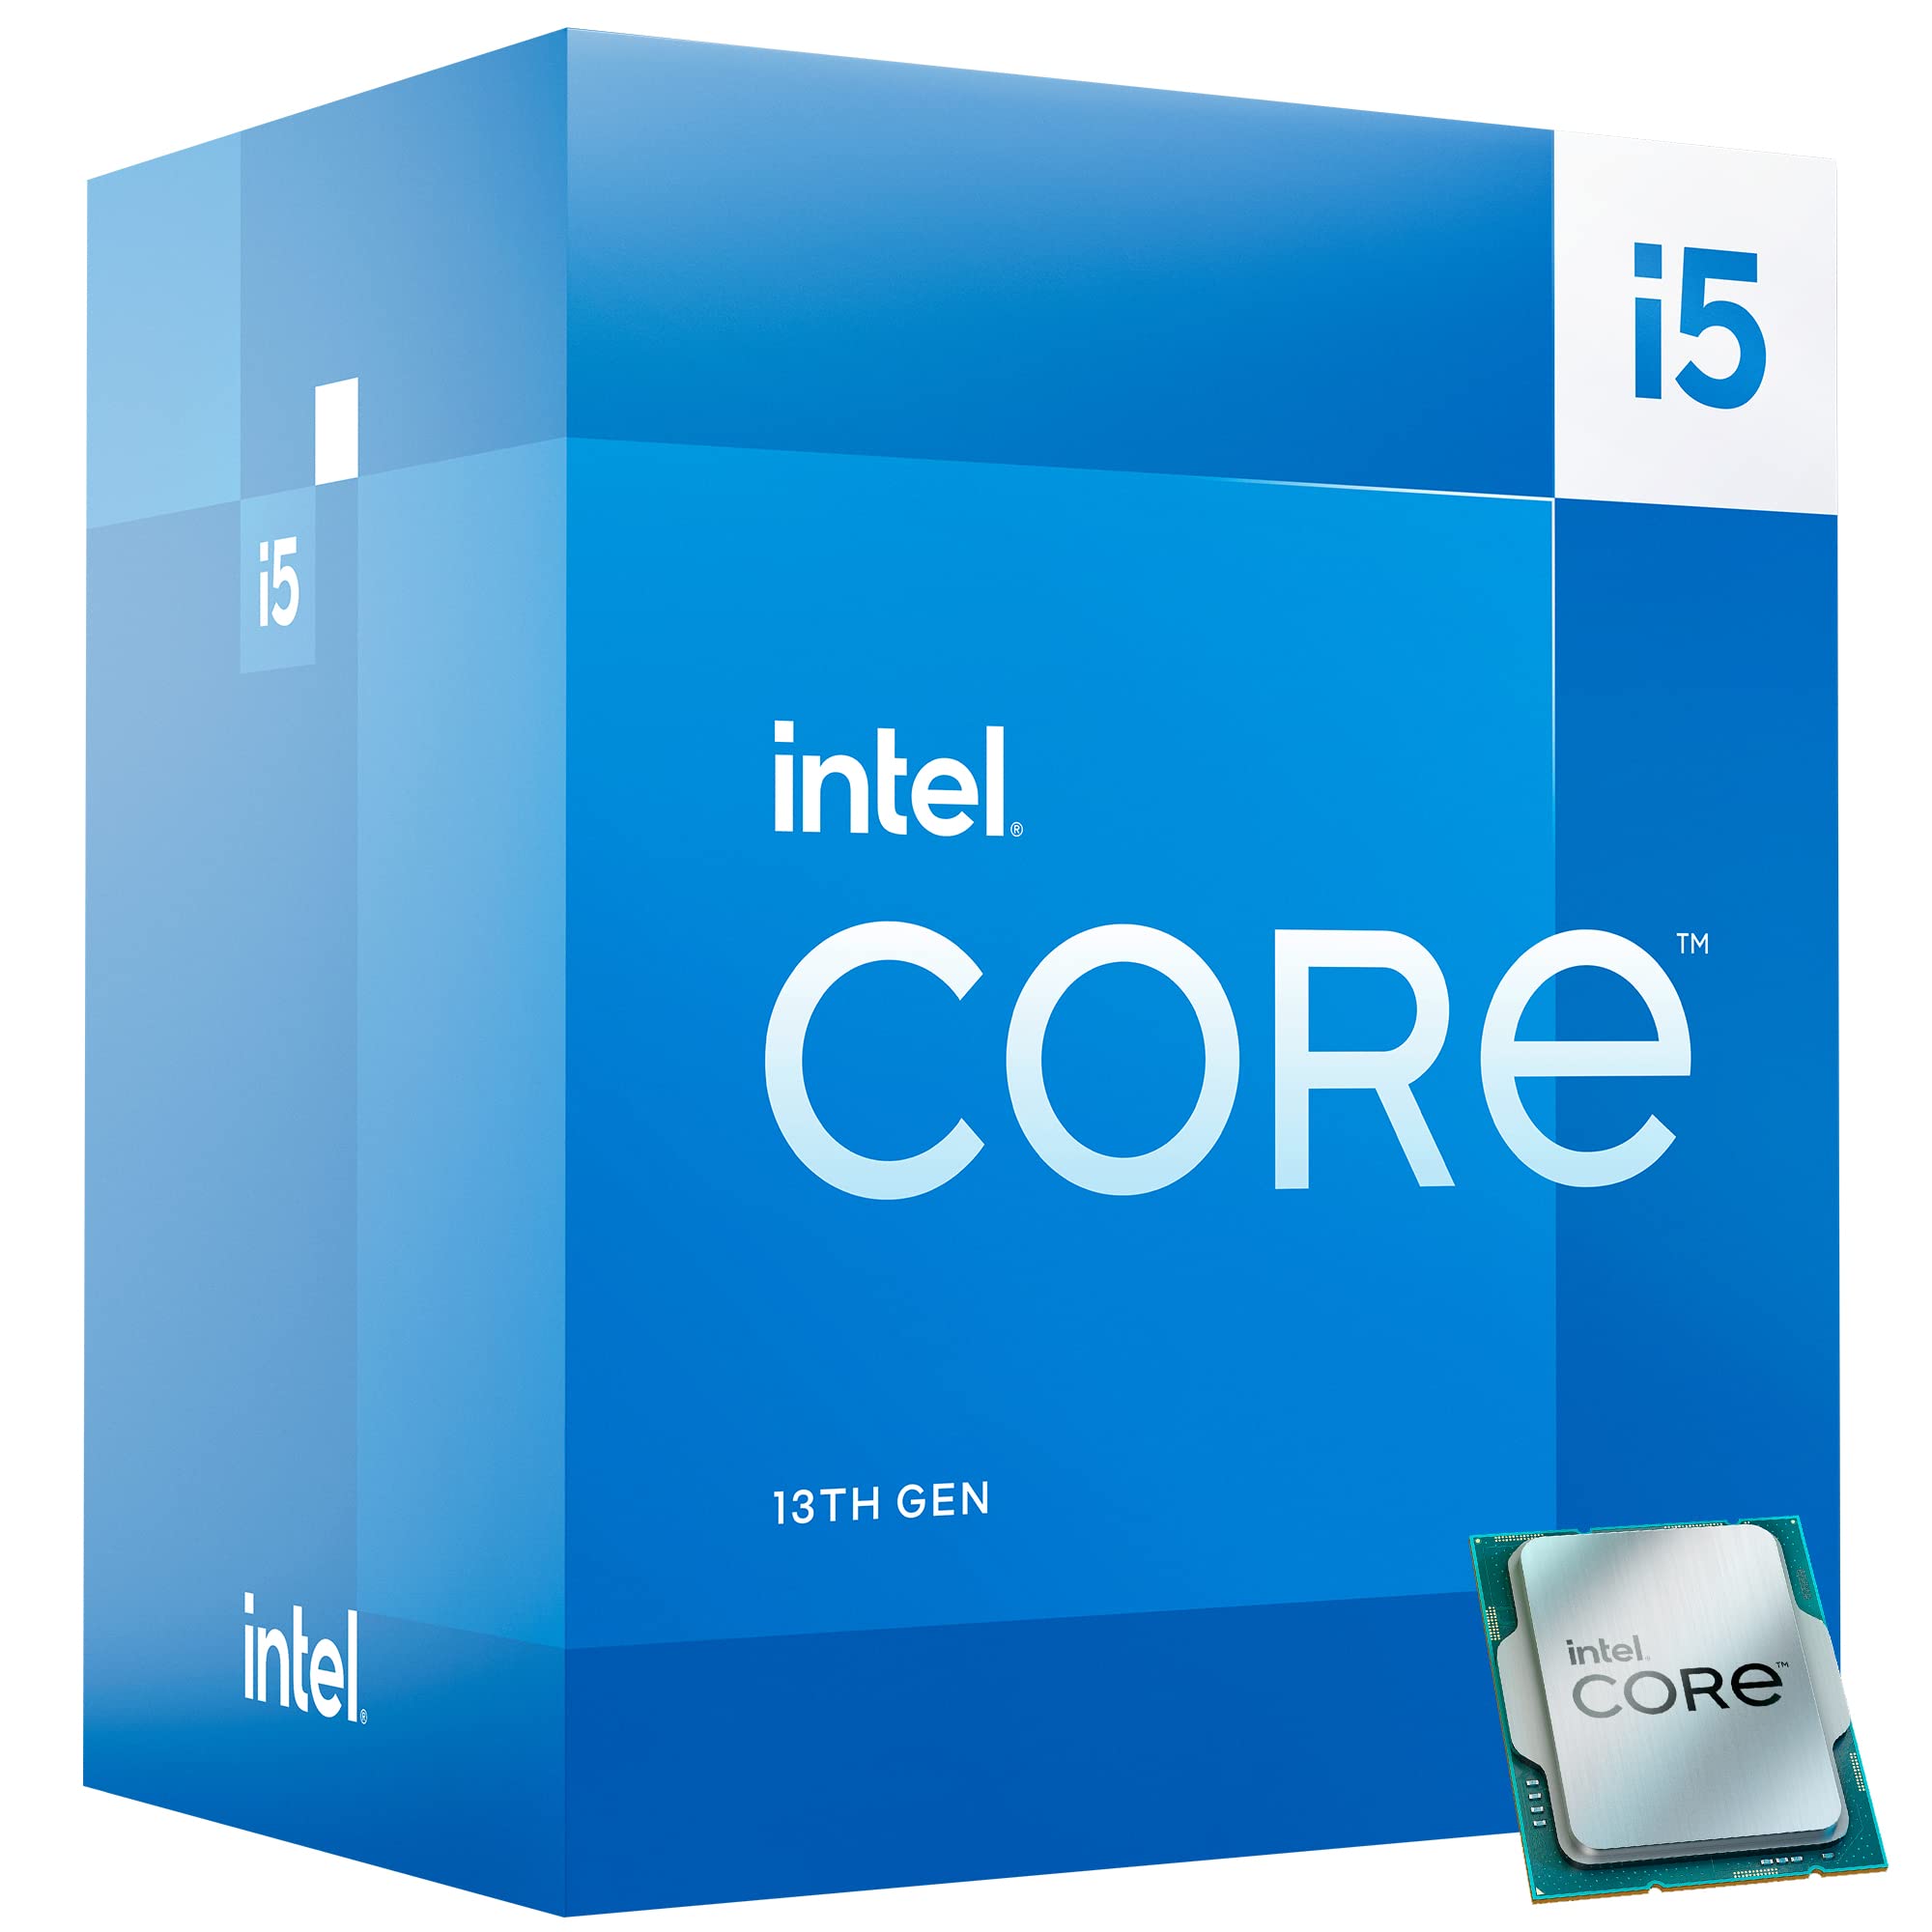 Intel Core i5-13500 Desktop Processor 14 cores (6 P-cores + 8 E-cores) 24MB Cache, up to 4.8 GHz $209.99